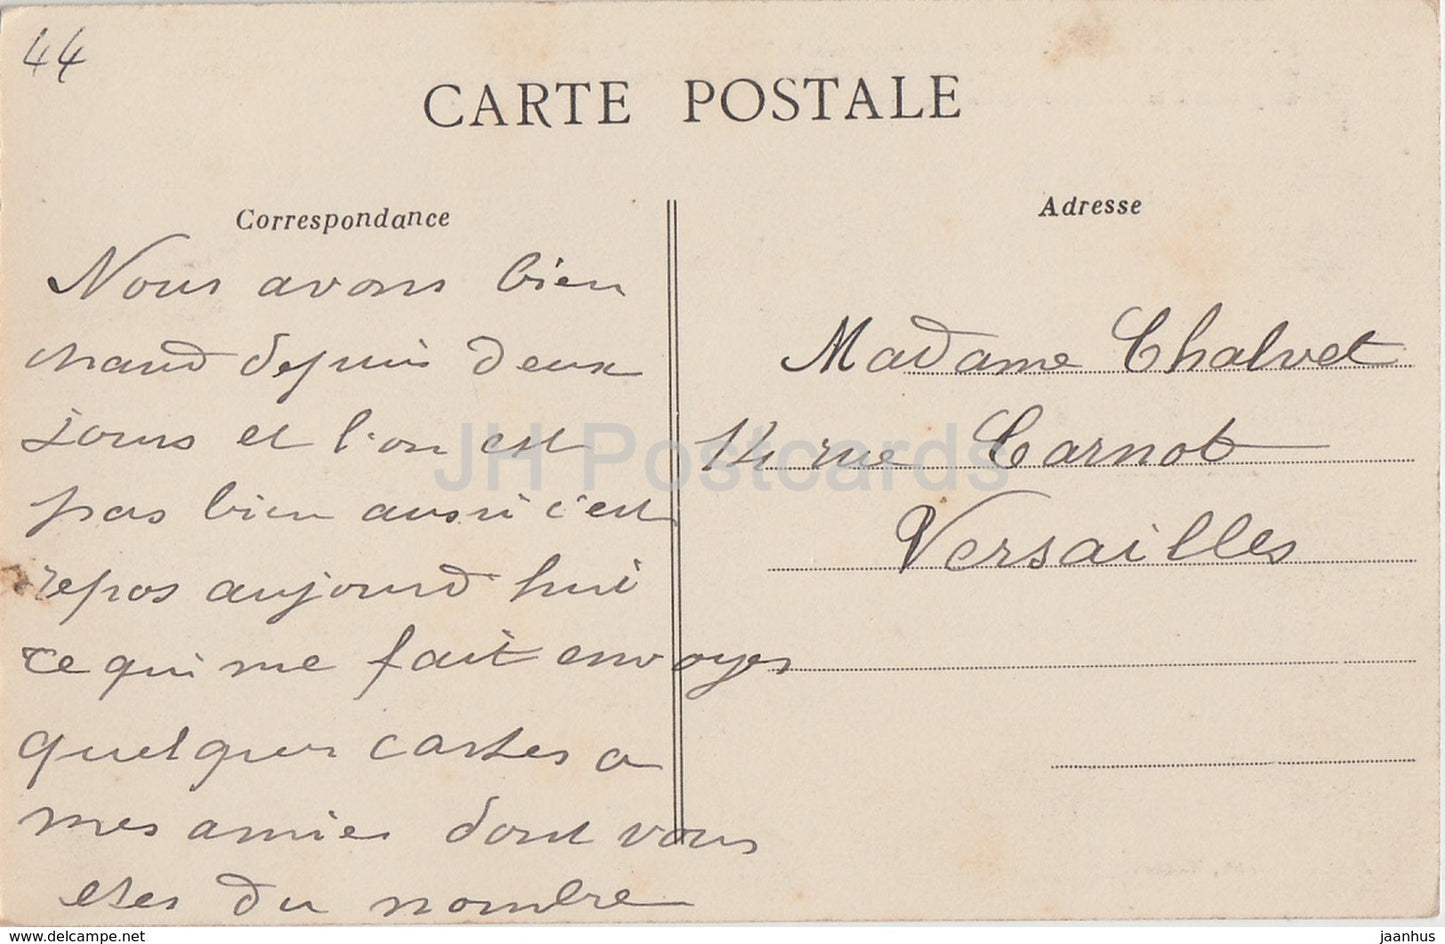 Chateau de Nantes - Le Petit Gouvernement - Schloss - 11 - alte Postkarte - 1913 - Frankreich - gebraucht